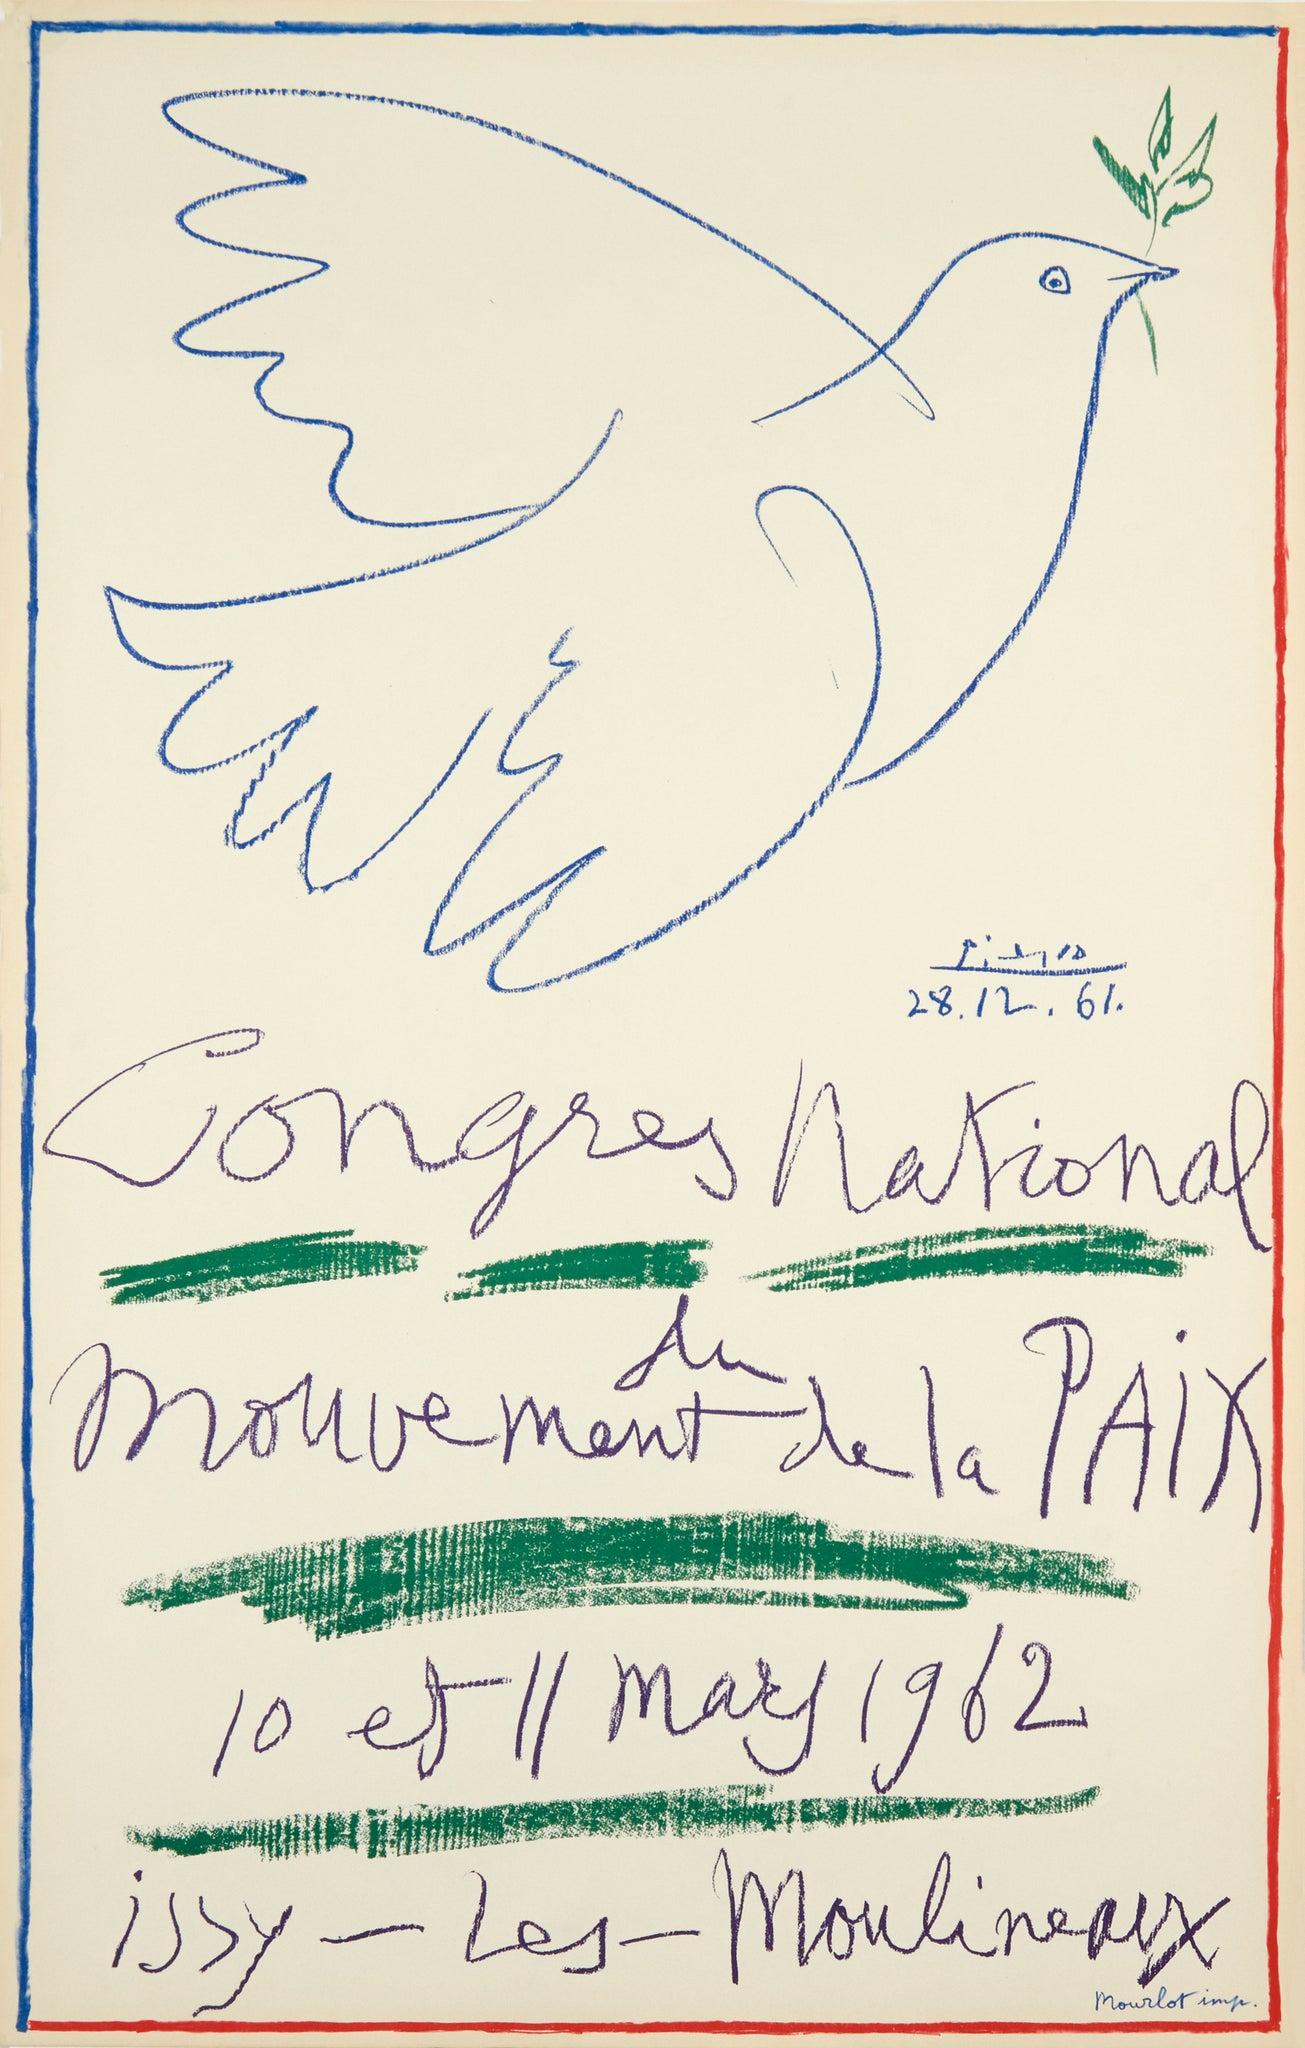 Congres National du Mouvement de la Paix - Issy-les-Moulineaux - Print by Pablo Picasso